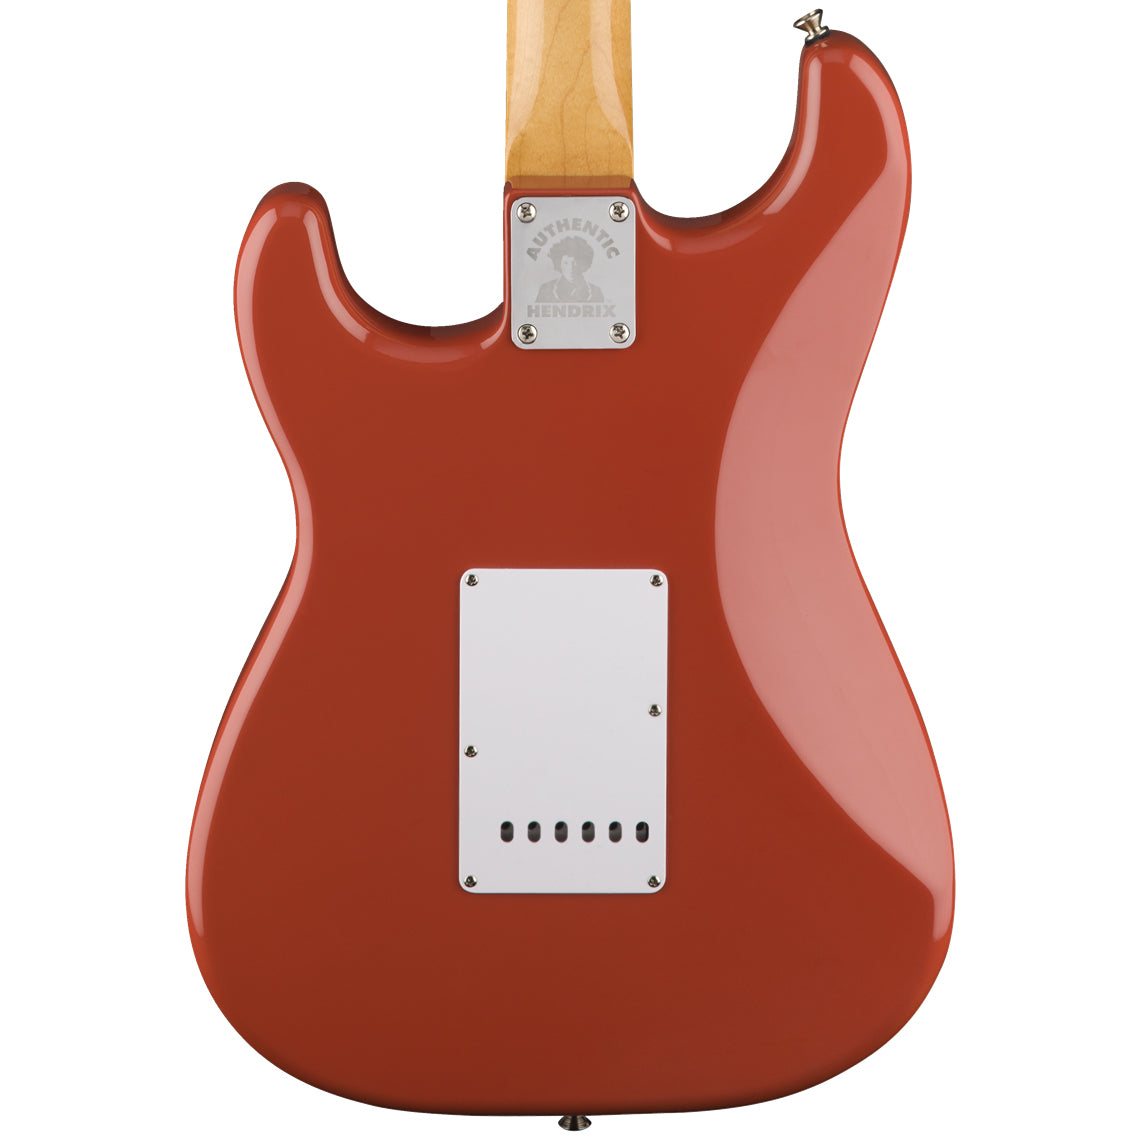 Fender Hendrix Monterey Stratocaster